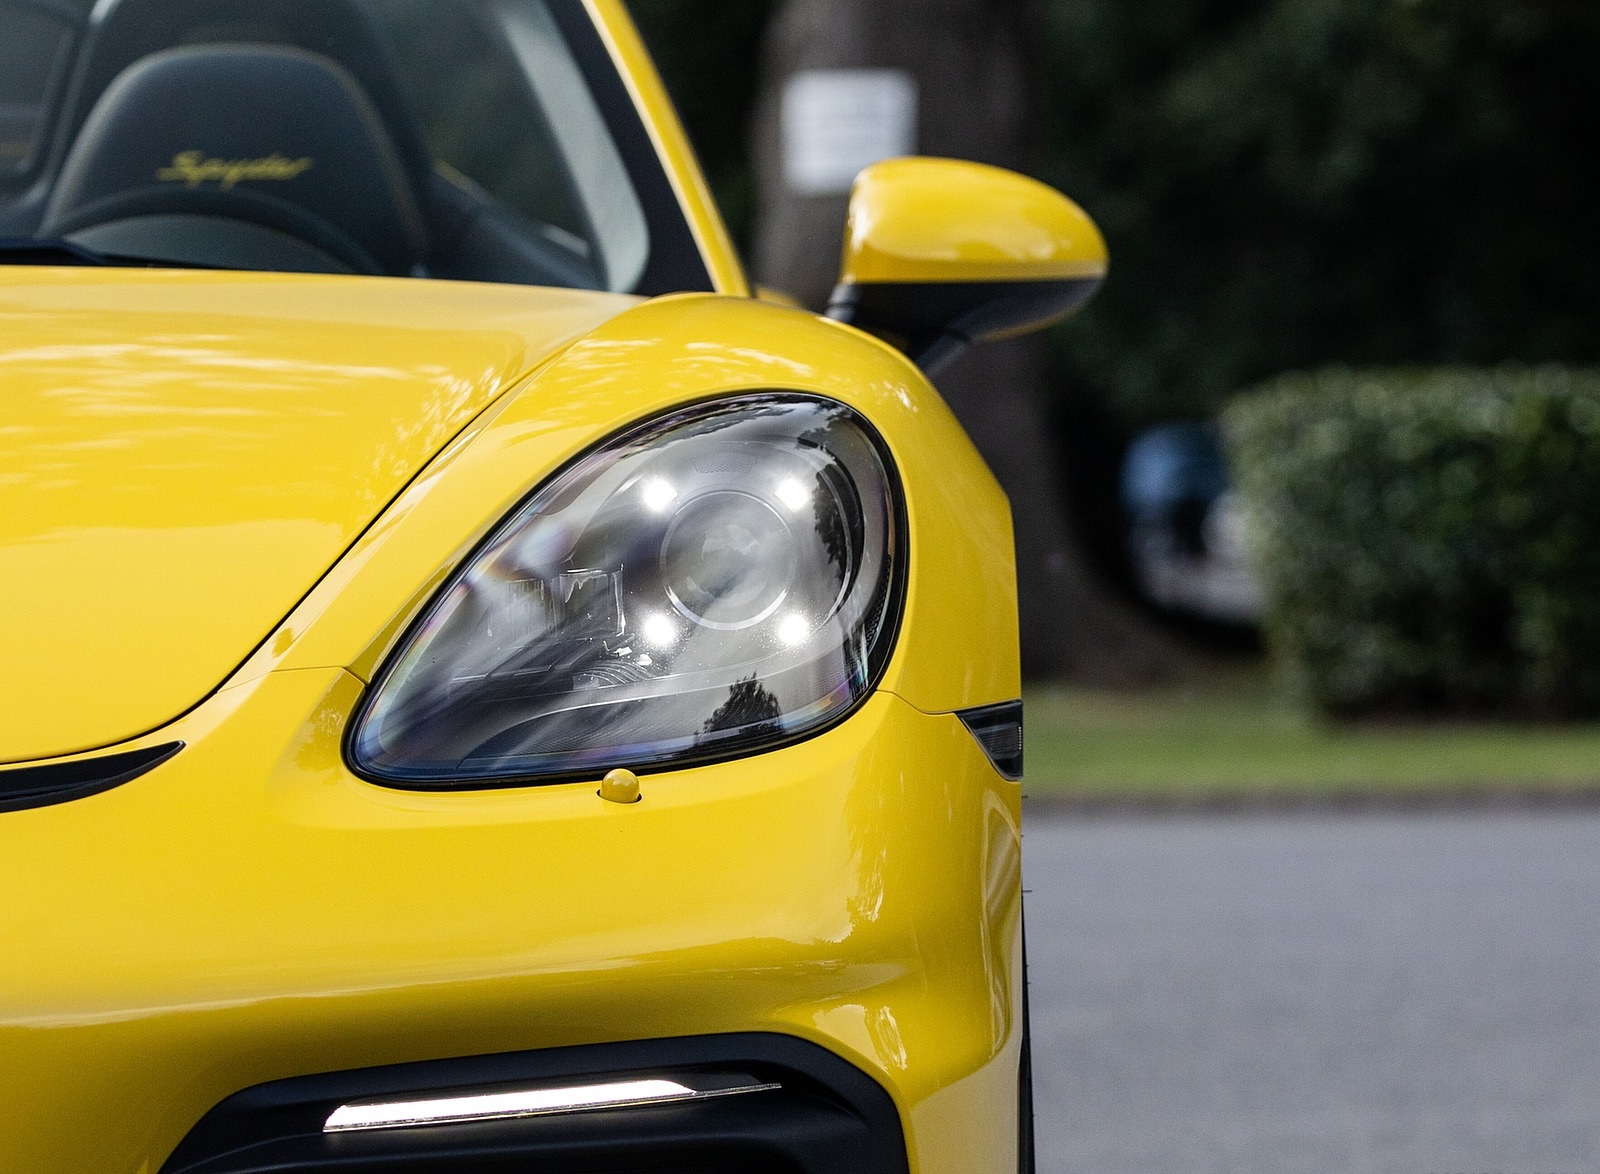 2020 Porsche 718 Spyder (Color: Racing Yellow) Headlight Wallpapers #59 of 295